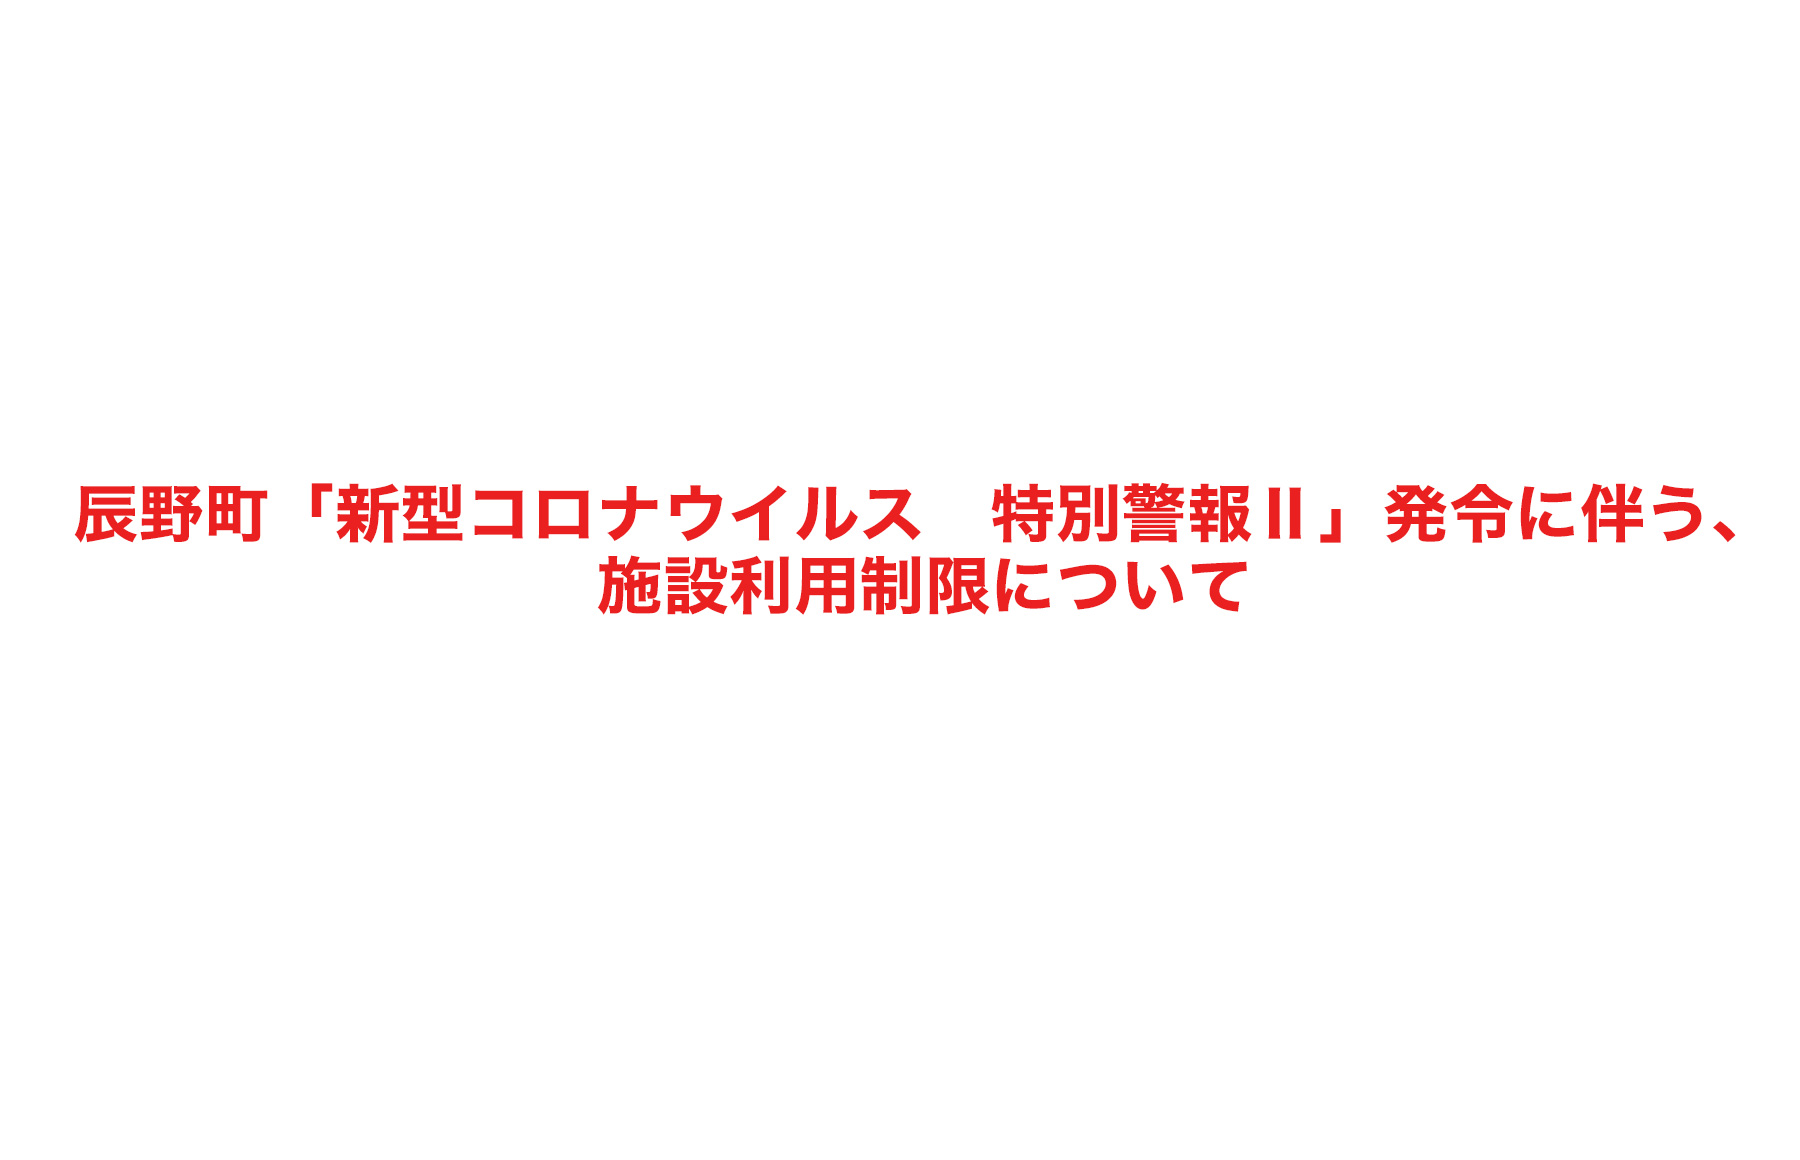 辰野町「新型コロナウイルス 特別警報Ⅱ」発令に伴う、施設利用制限について